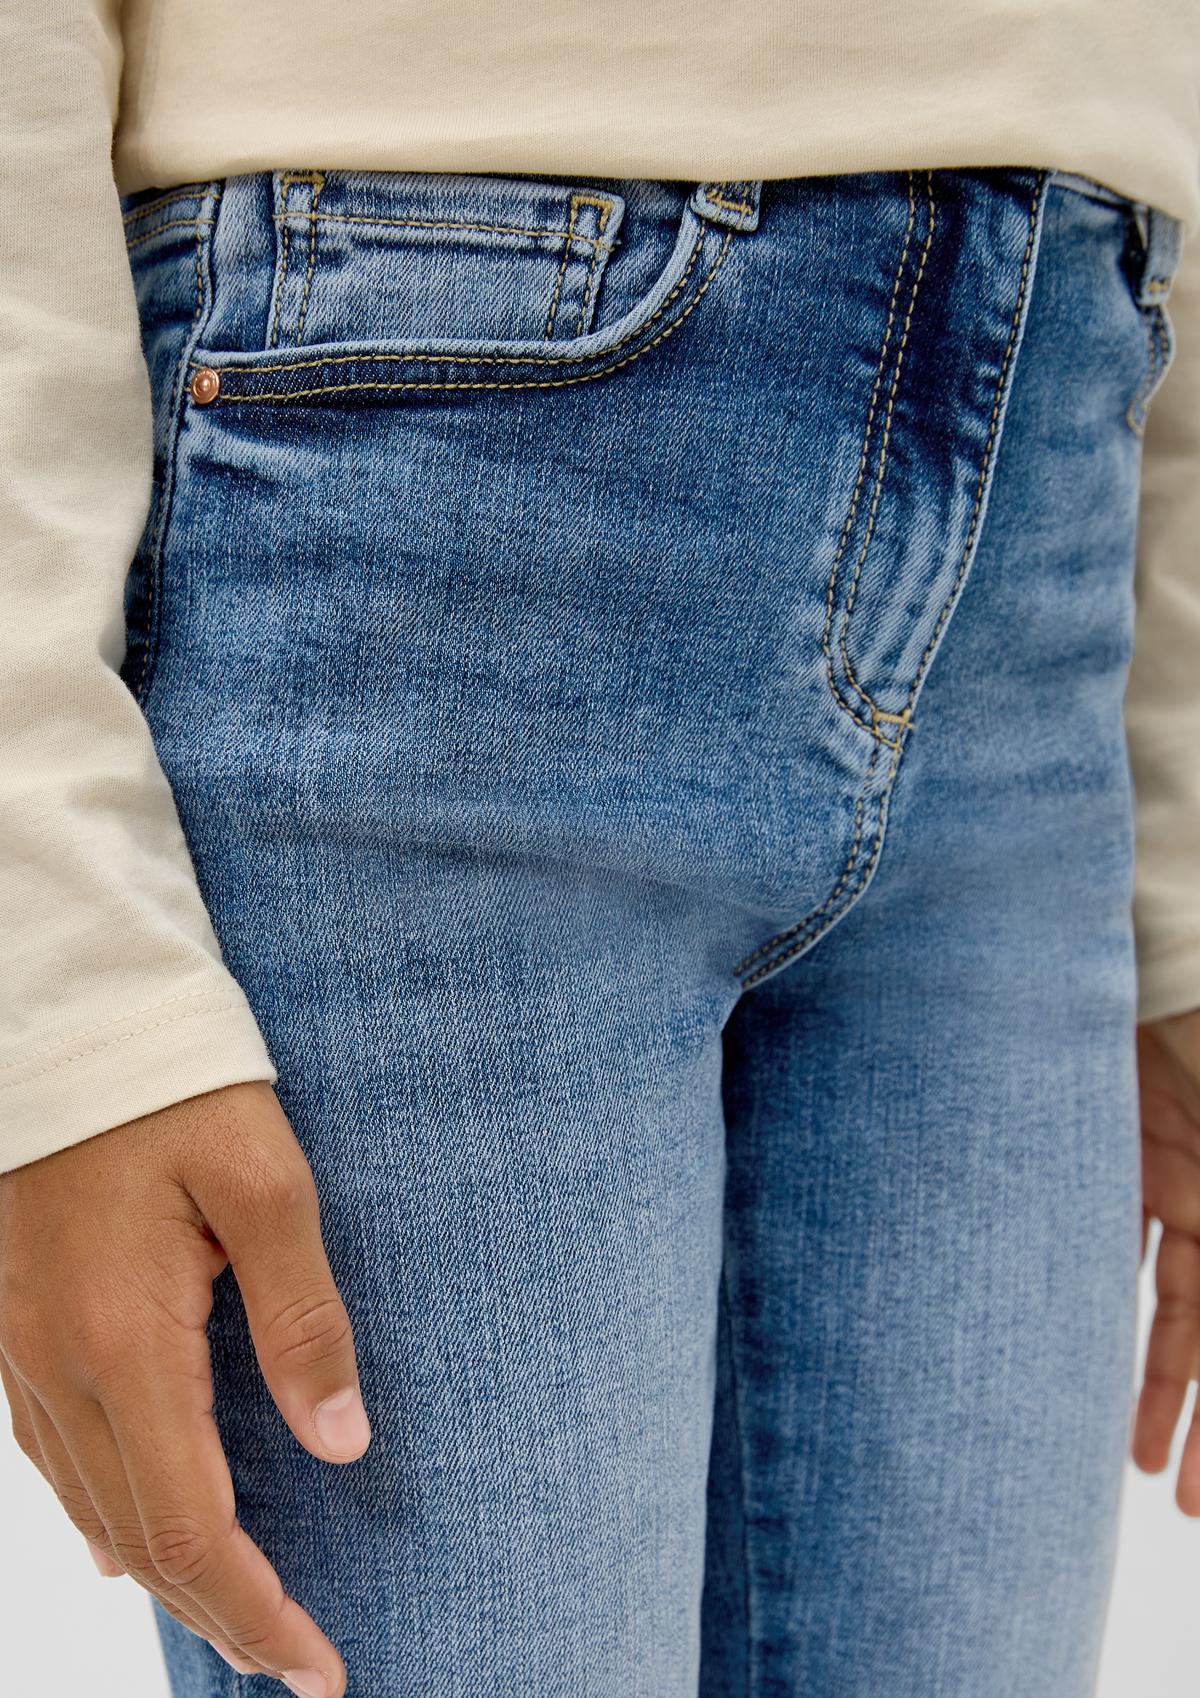 s.Oliver Suri : jean taille haute, coupe Slim leg